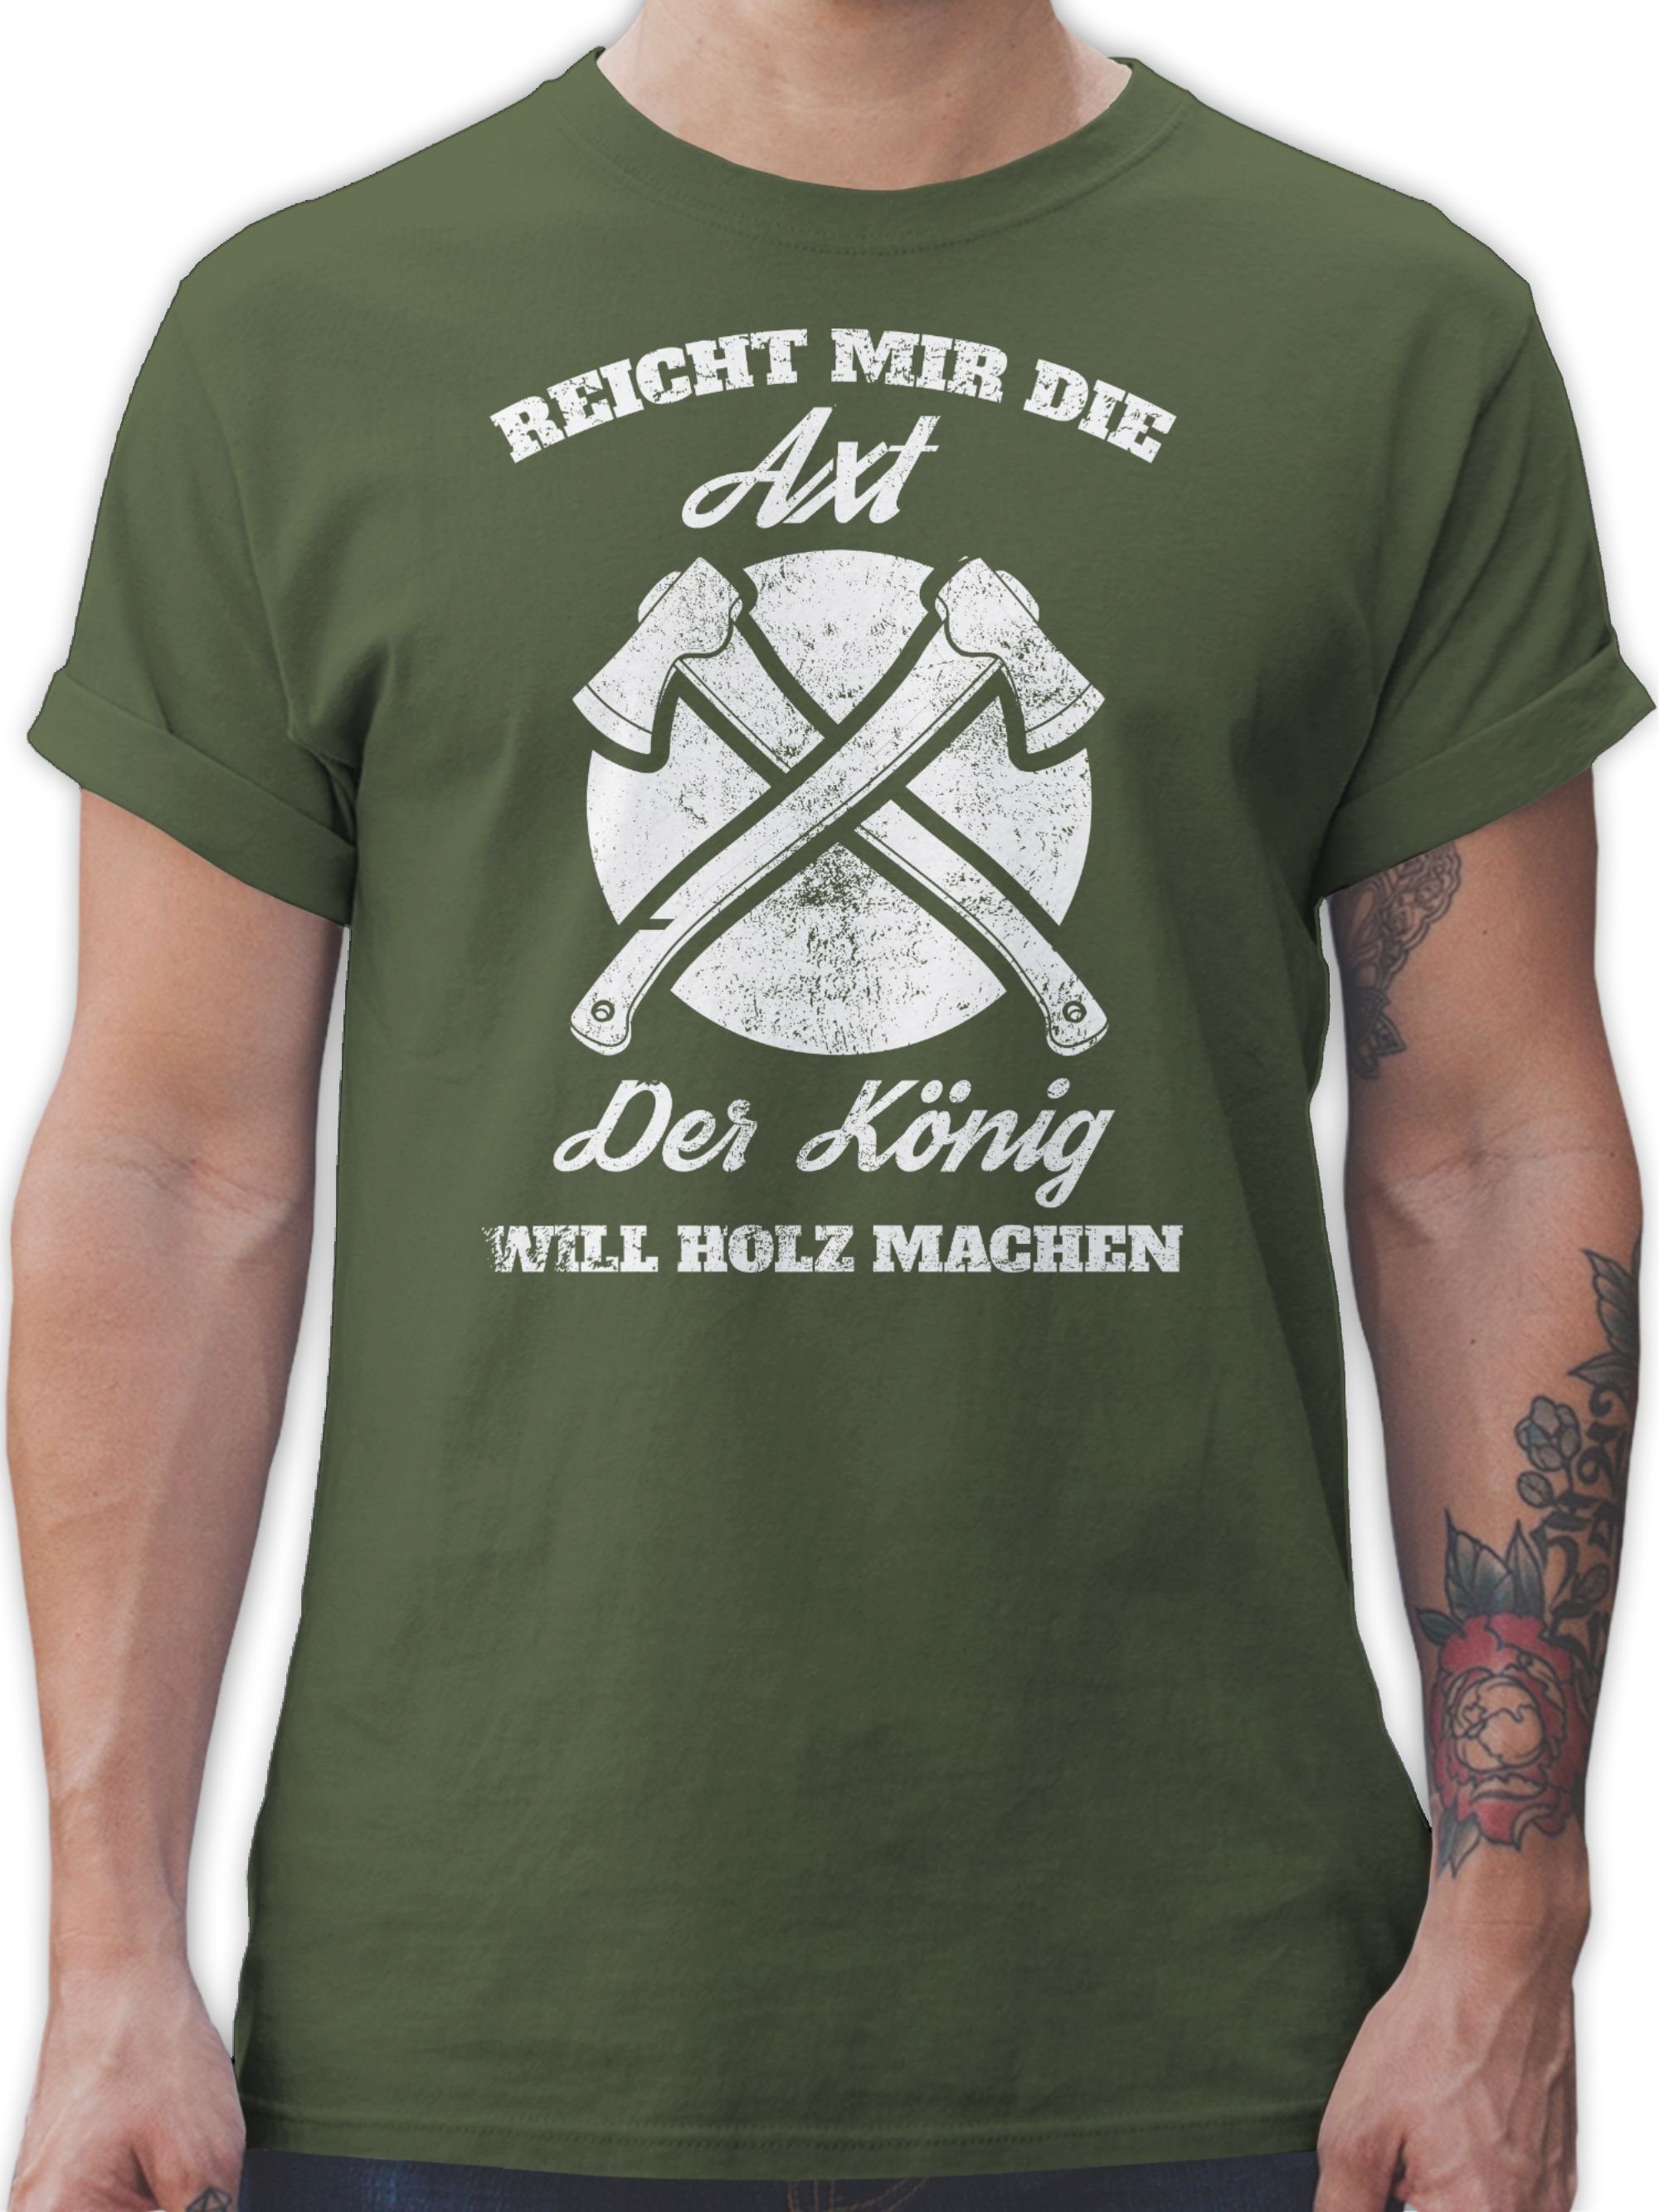 Grün mir Shirtracer Axt 3 Reicht Sprüche Army die Statement T-Shirt